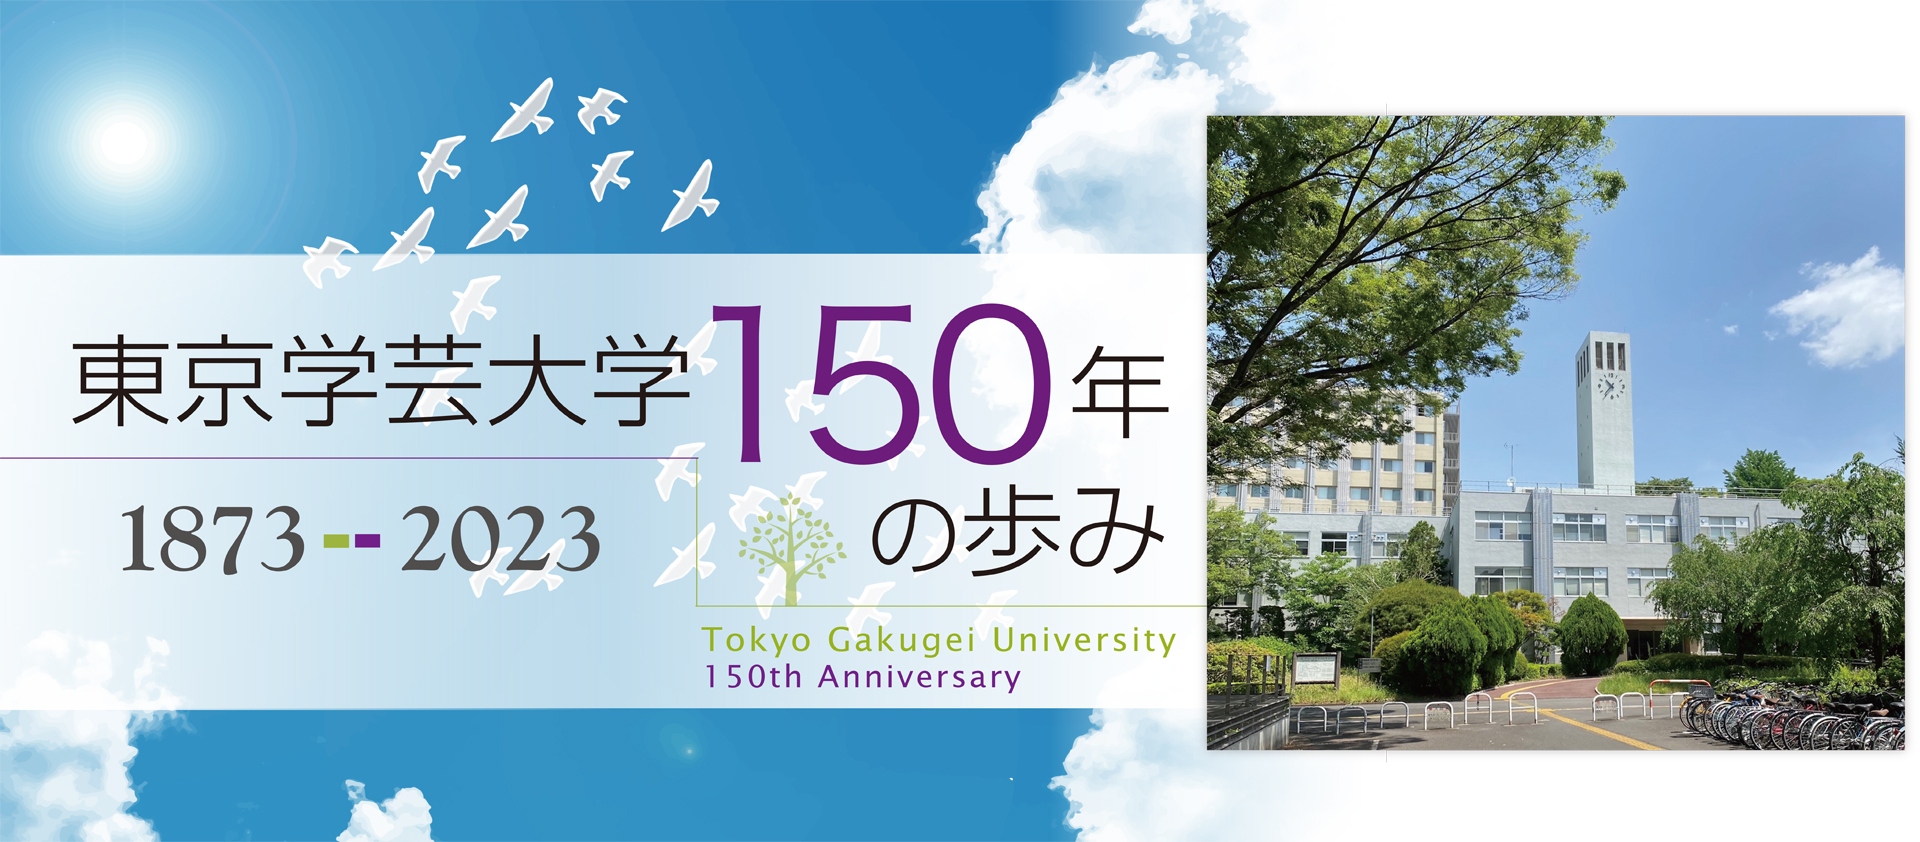 『東京学芸大学150年の歩み　1873-2023』を出版しました